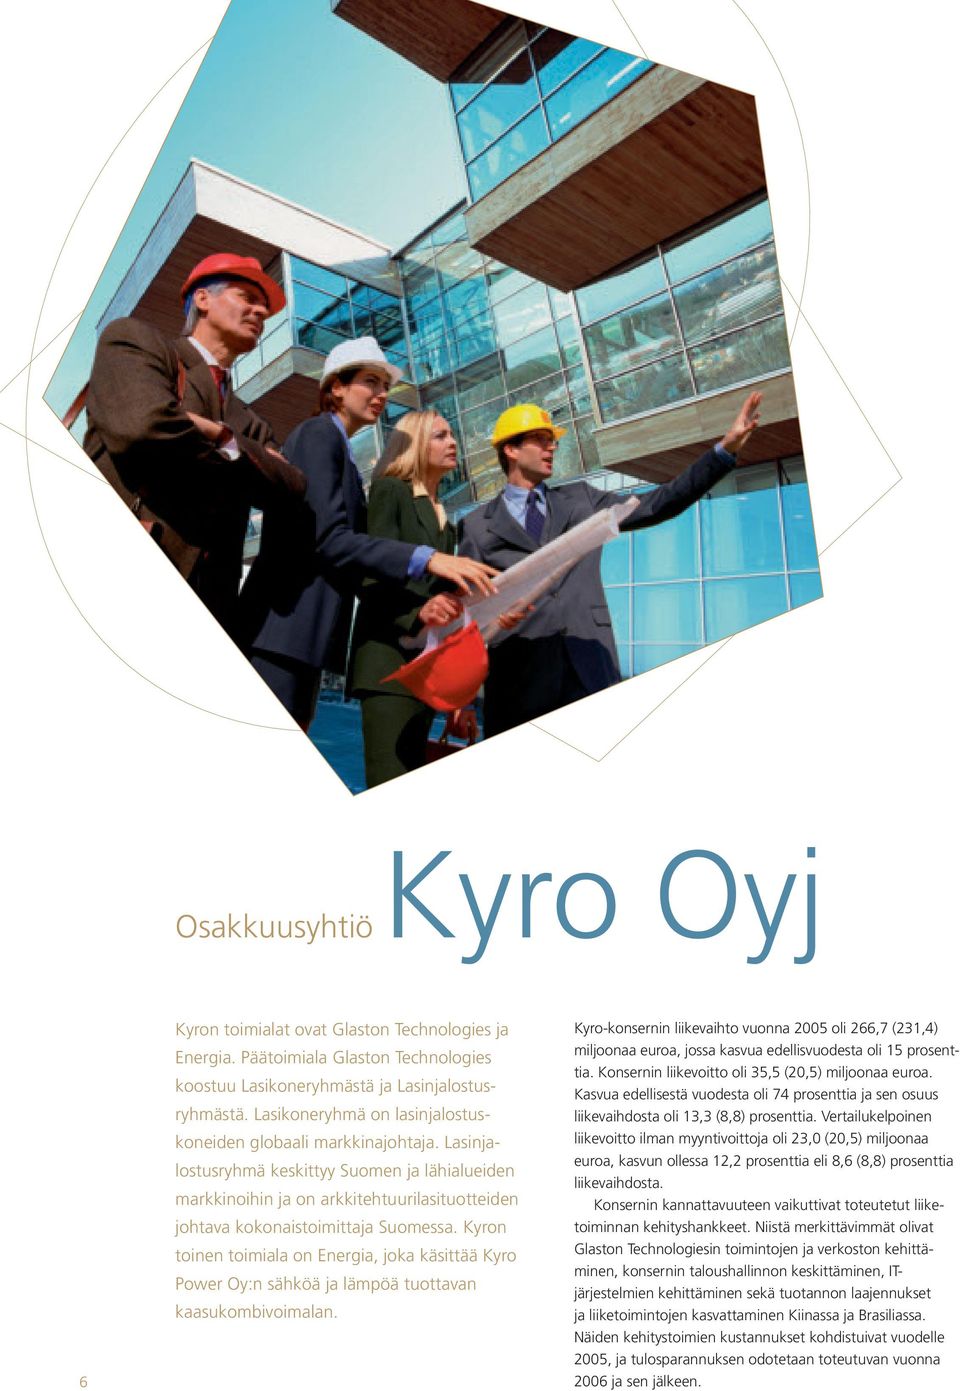 Kyron toinen toimiala on Energia, joka käsittää Kyro Power Oy:n sähköä ja lämpöä tuottavan kaasukombivoimalan.